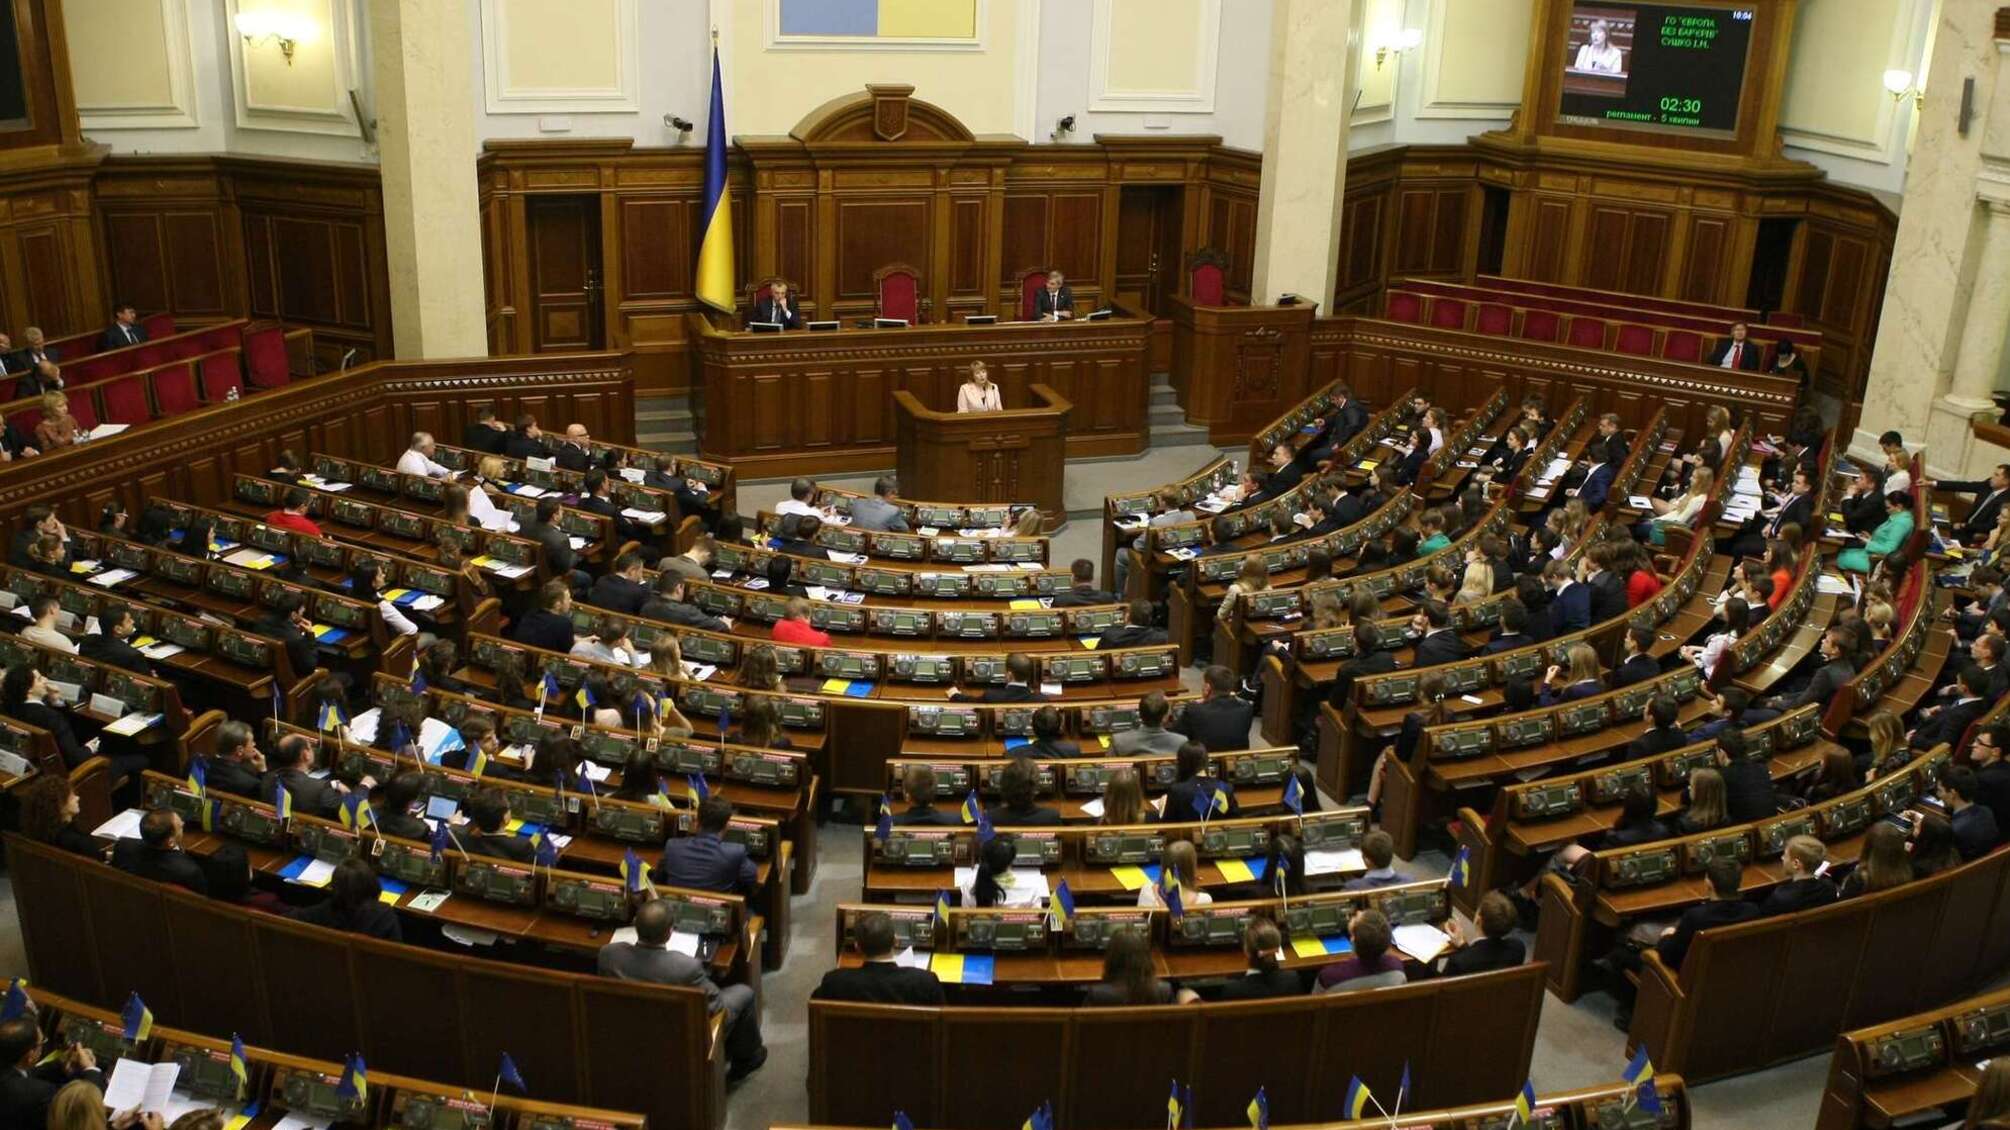 'Розкрадання йде роками!' - нардеп Береза на засіданні по розслідуванню скандалу з 'Укроборонпромом' (ВІДЕО)